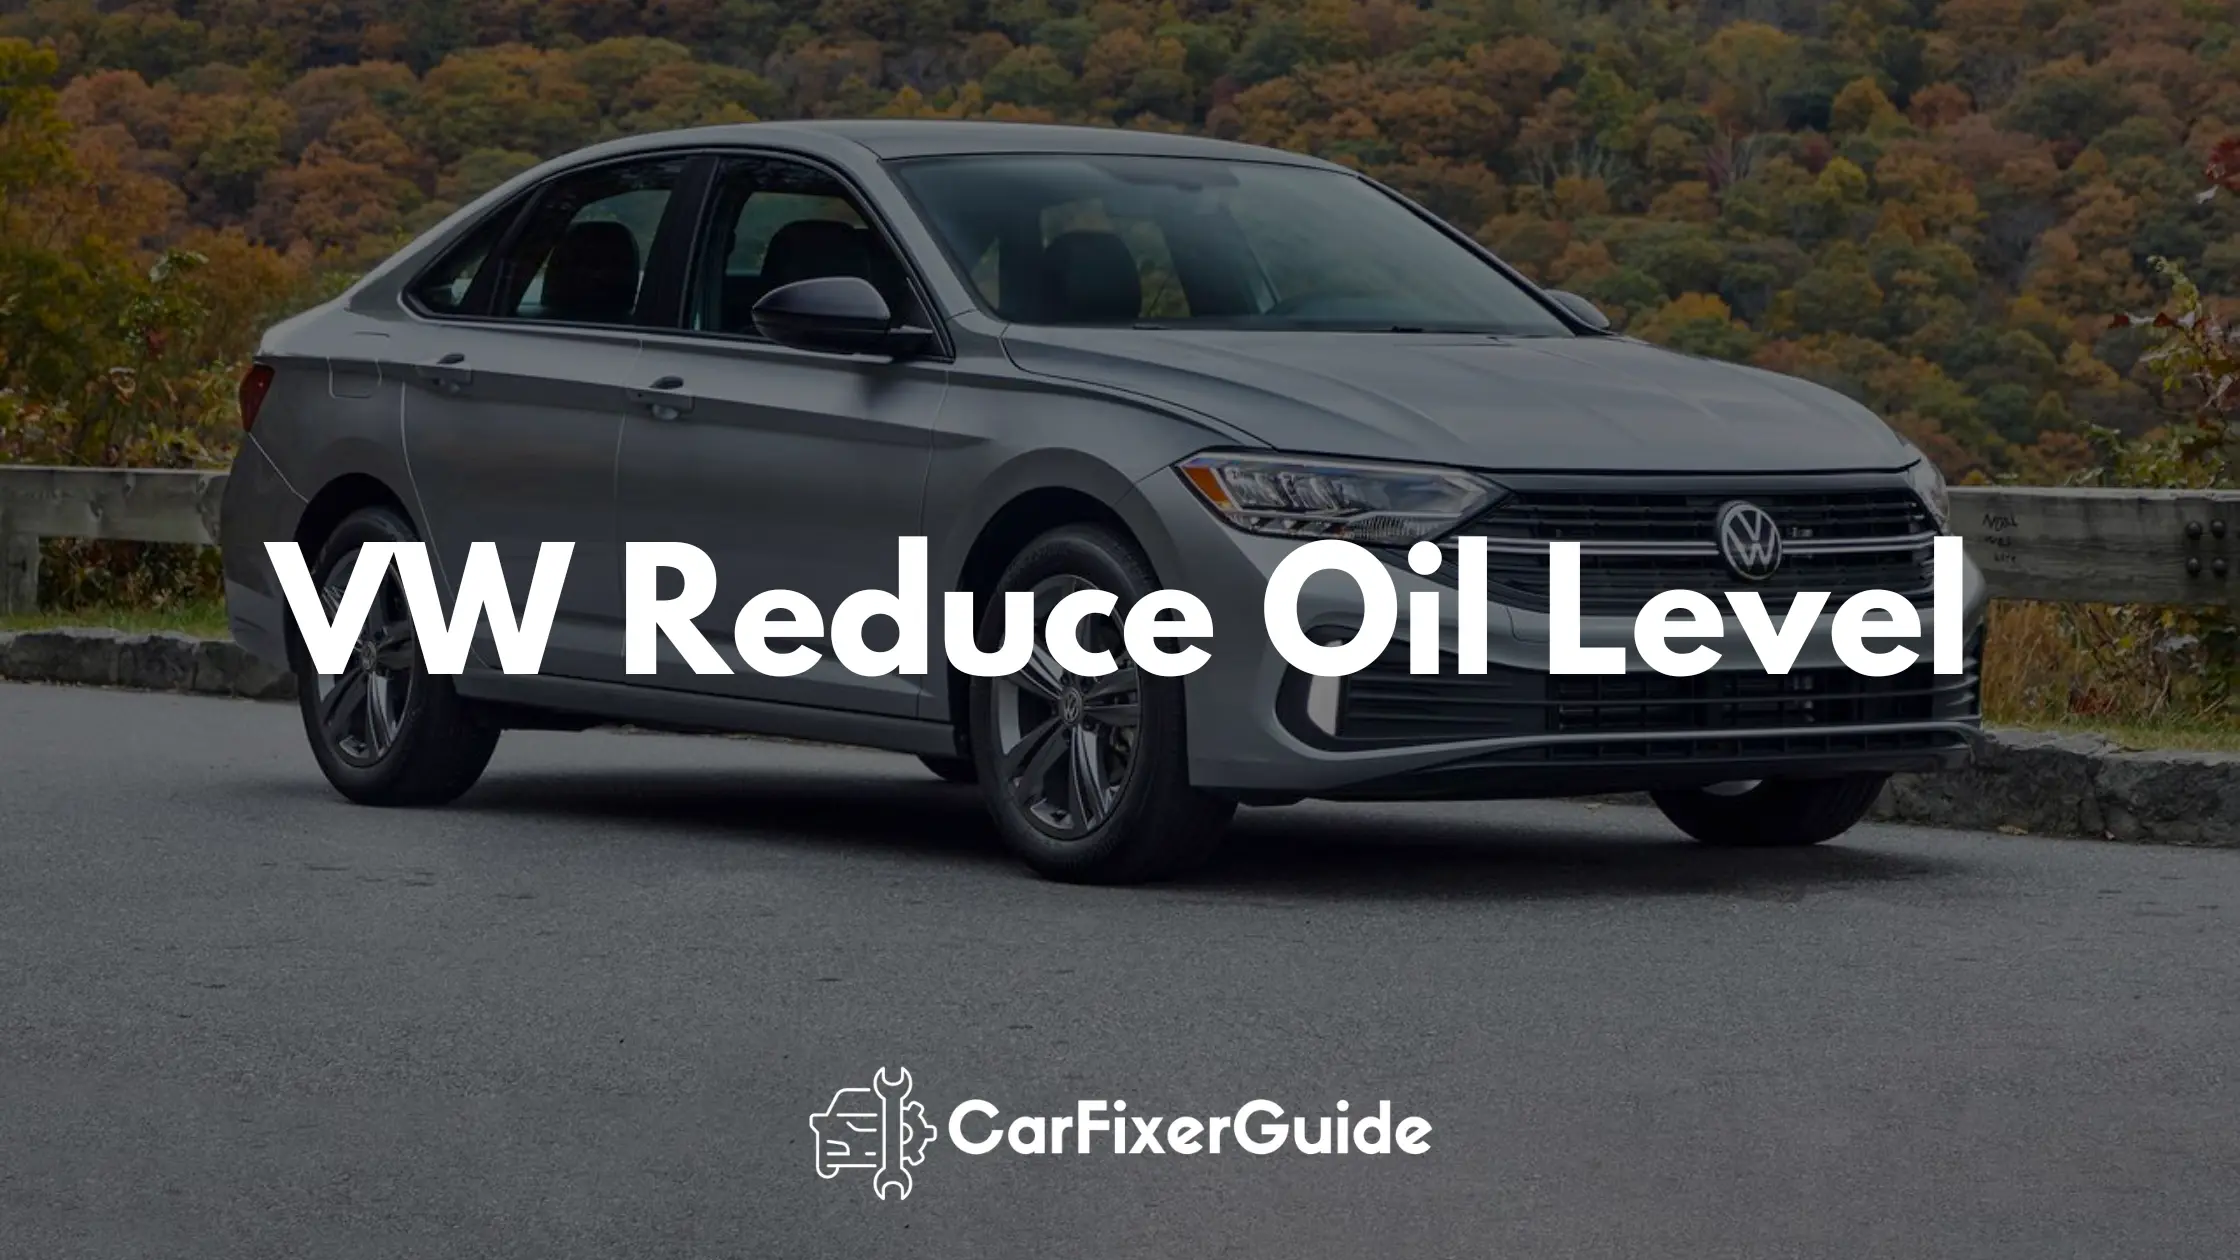 VW Reduce Oil Level